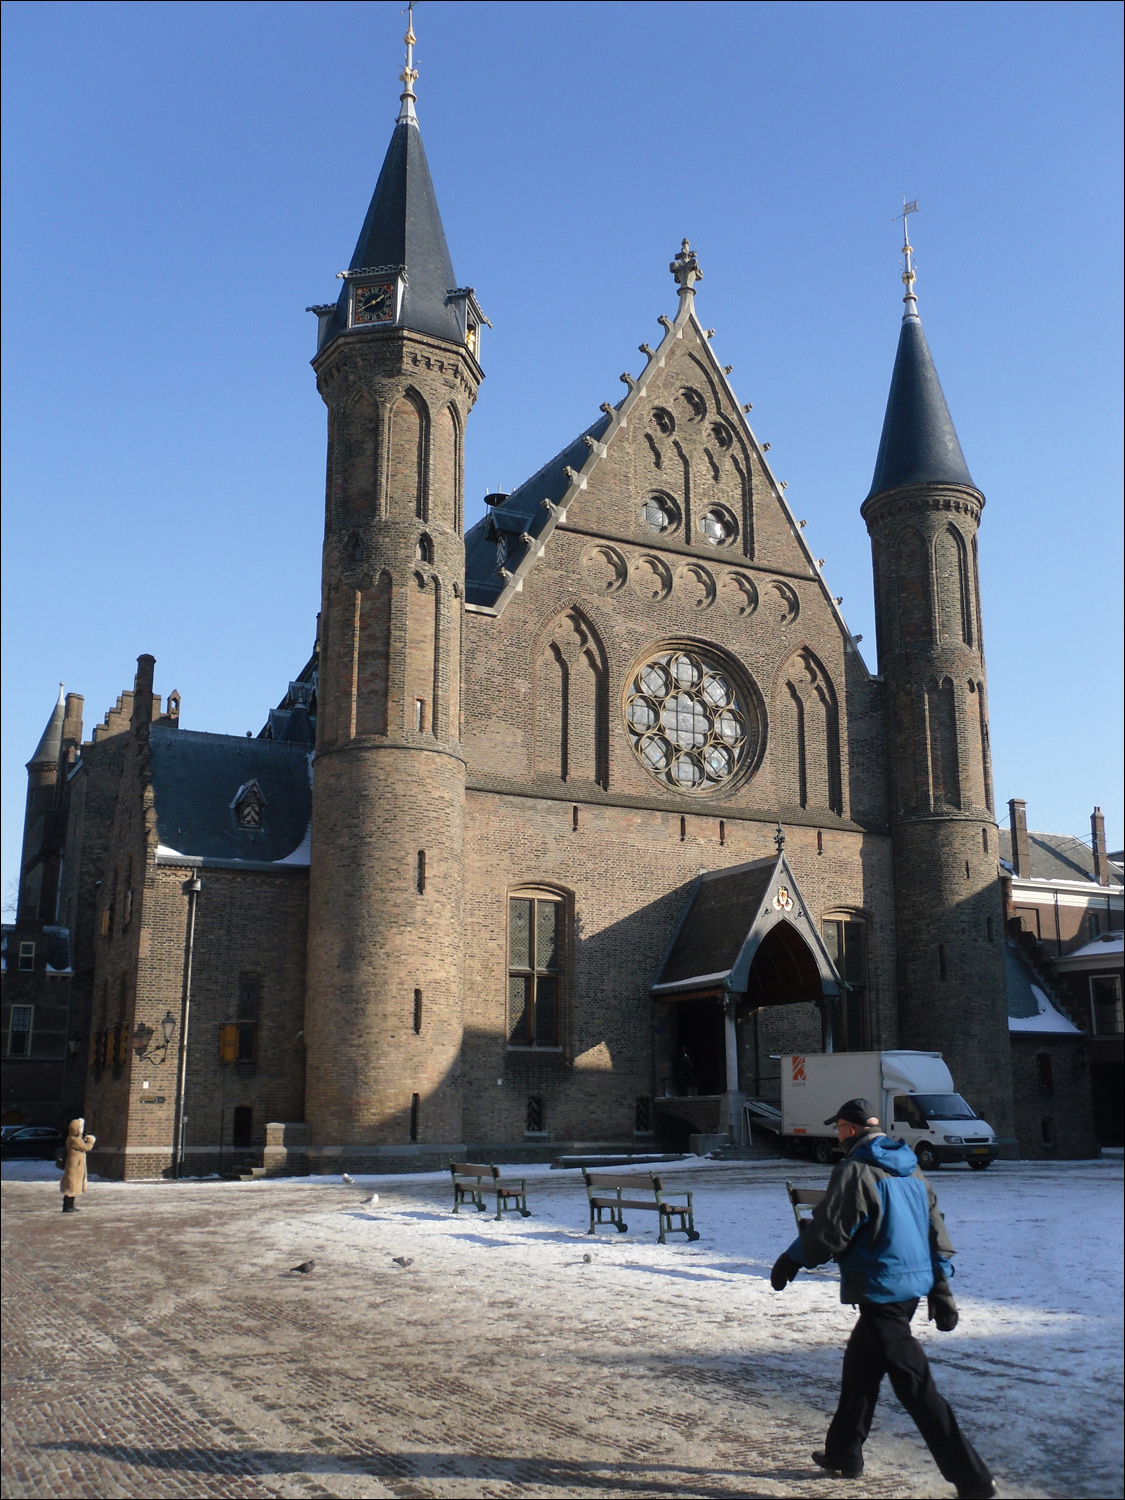 Hague-church in middle of Binnenhof